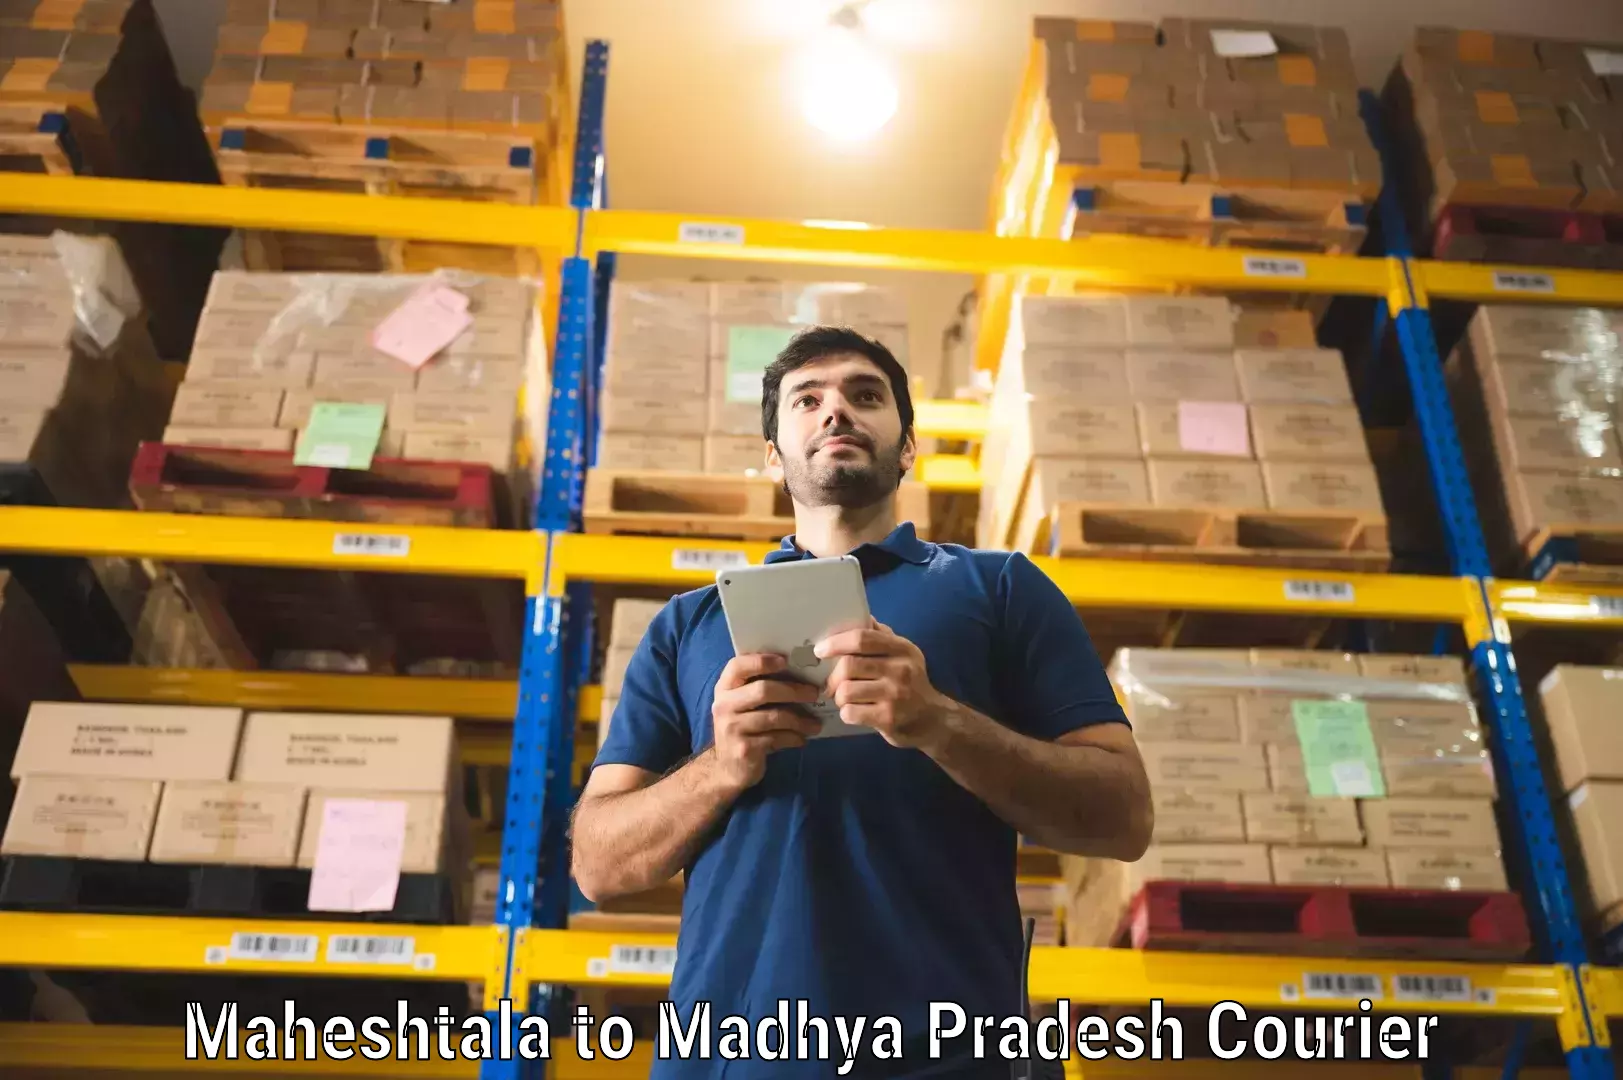 Fragile item shipping Maheshtala to Jhabua